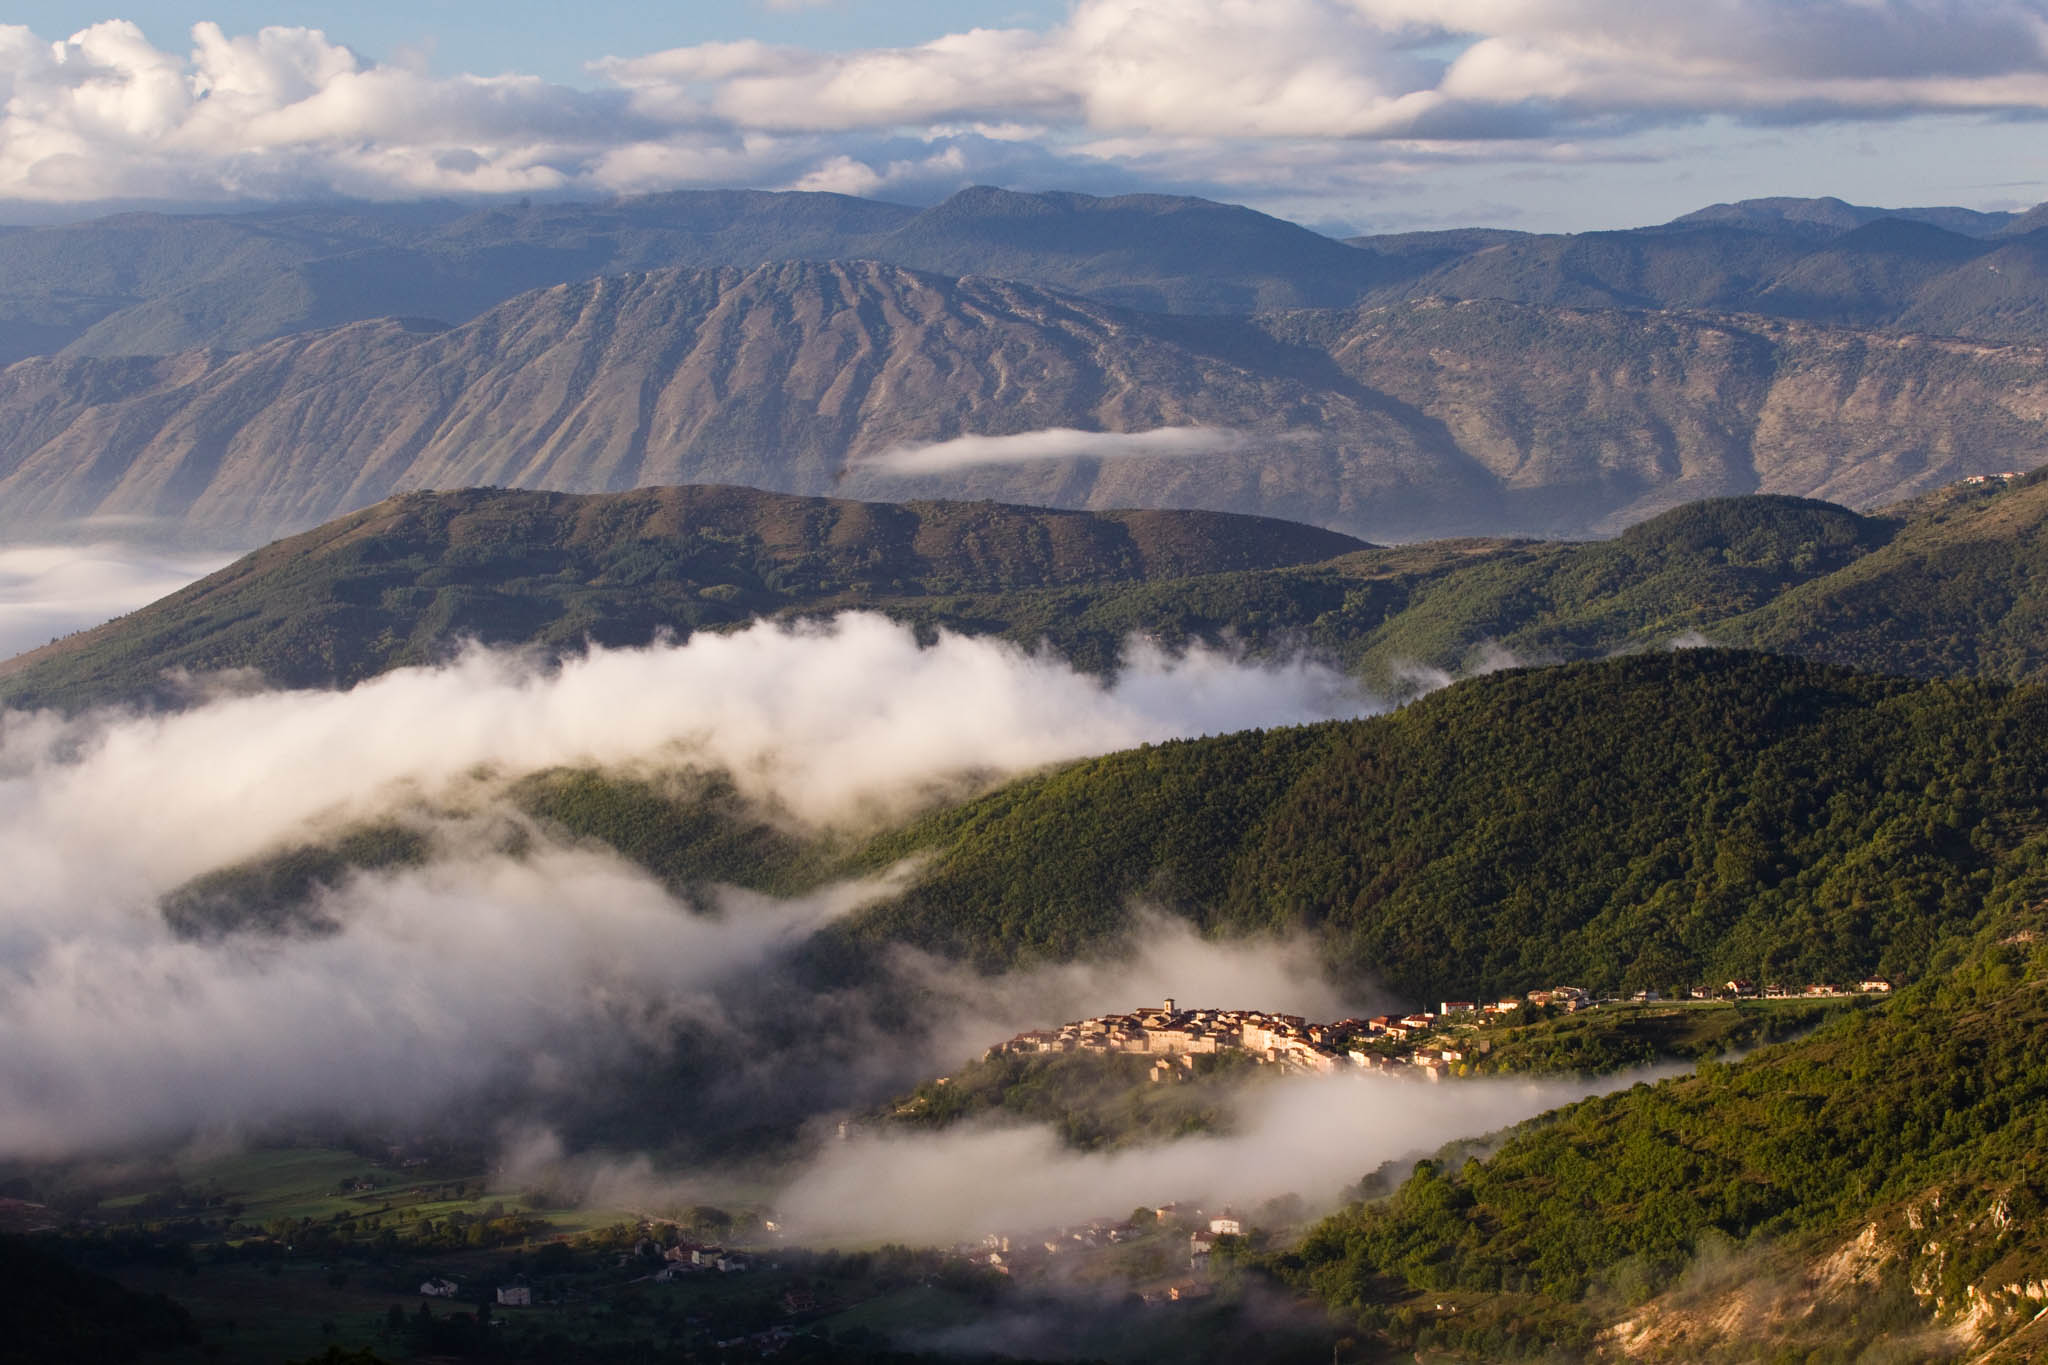 The village of Rosciolo dei Marsi in western Abruzzo, Central Apennines, Italy.